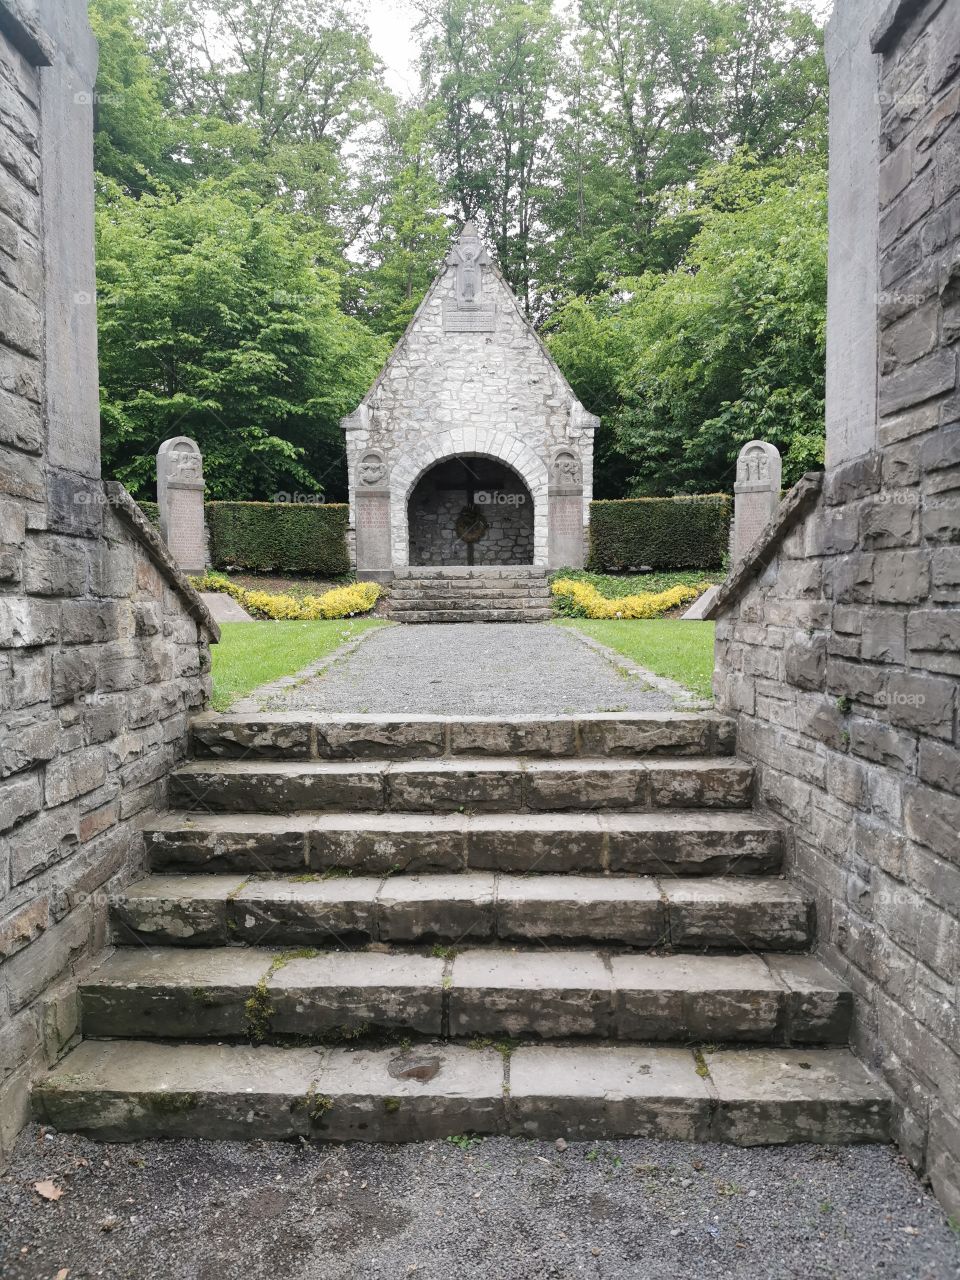 Eingang zu einer kleinen abgelegen Gedenkstätte. An die Gefallen. Mitten im Wald